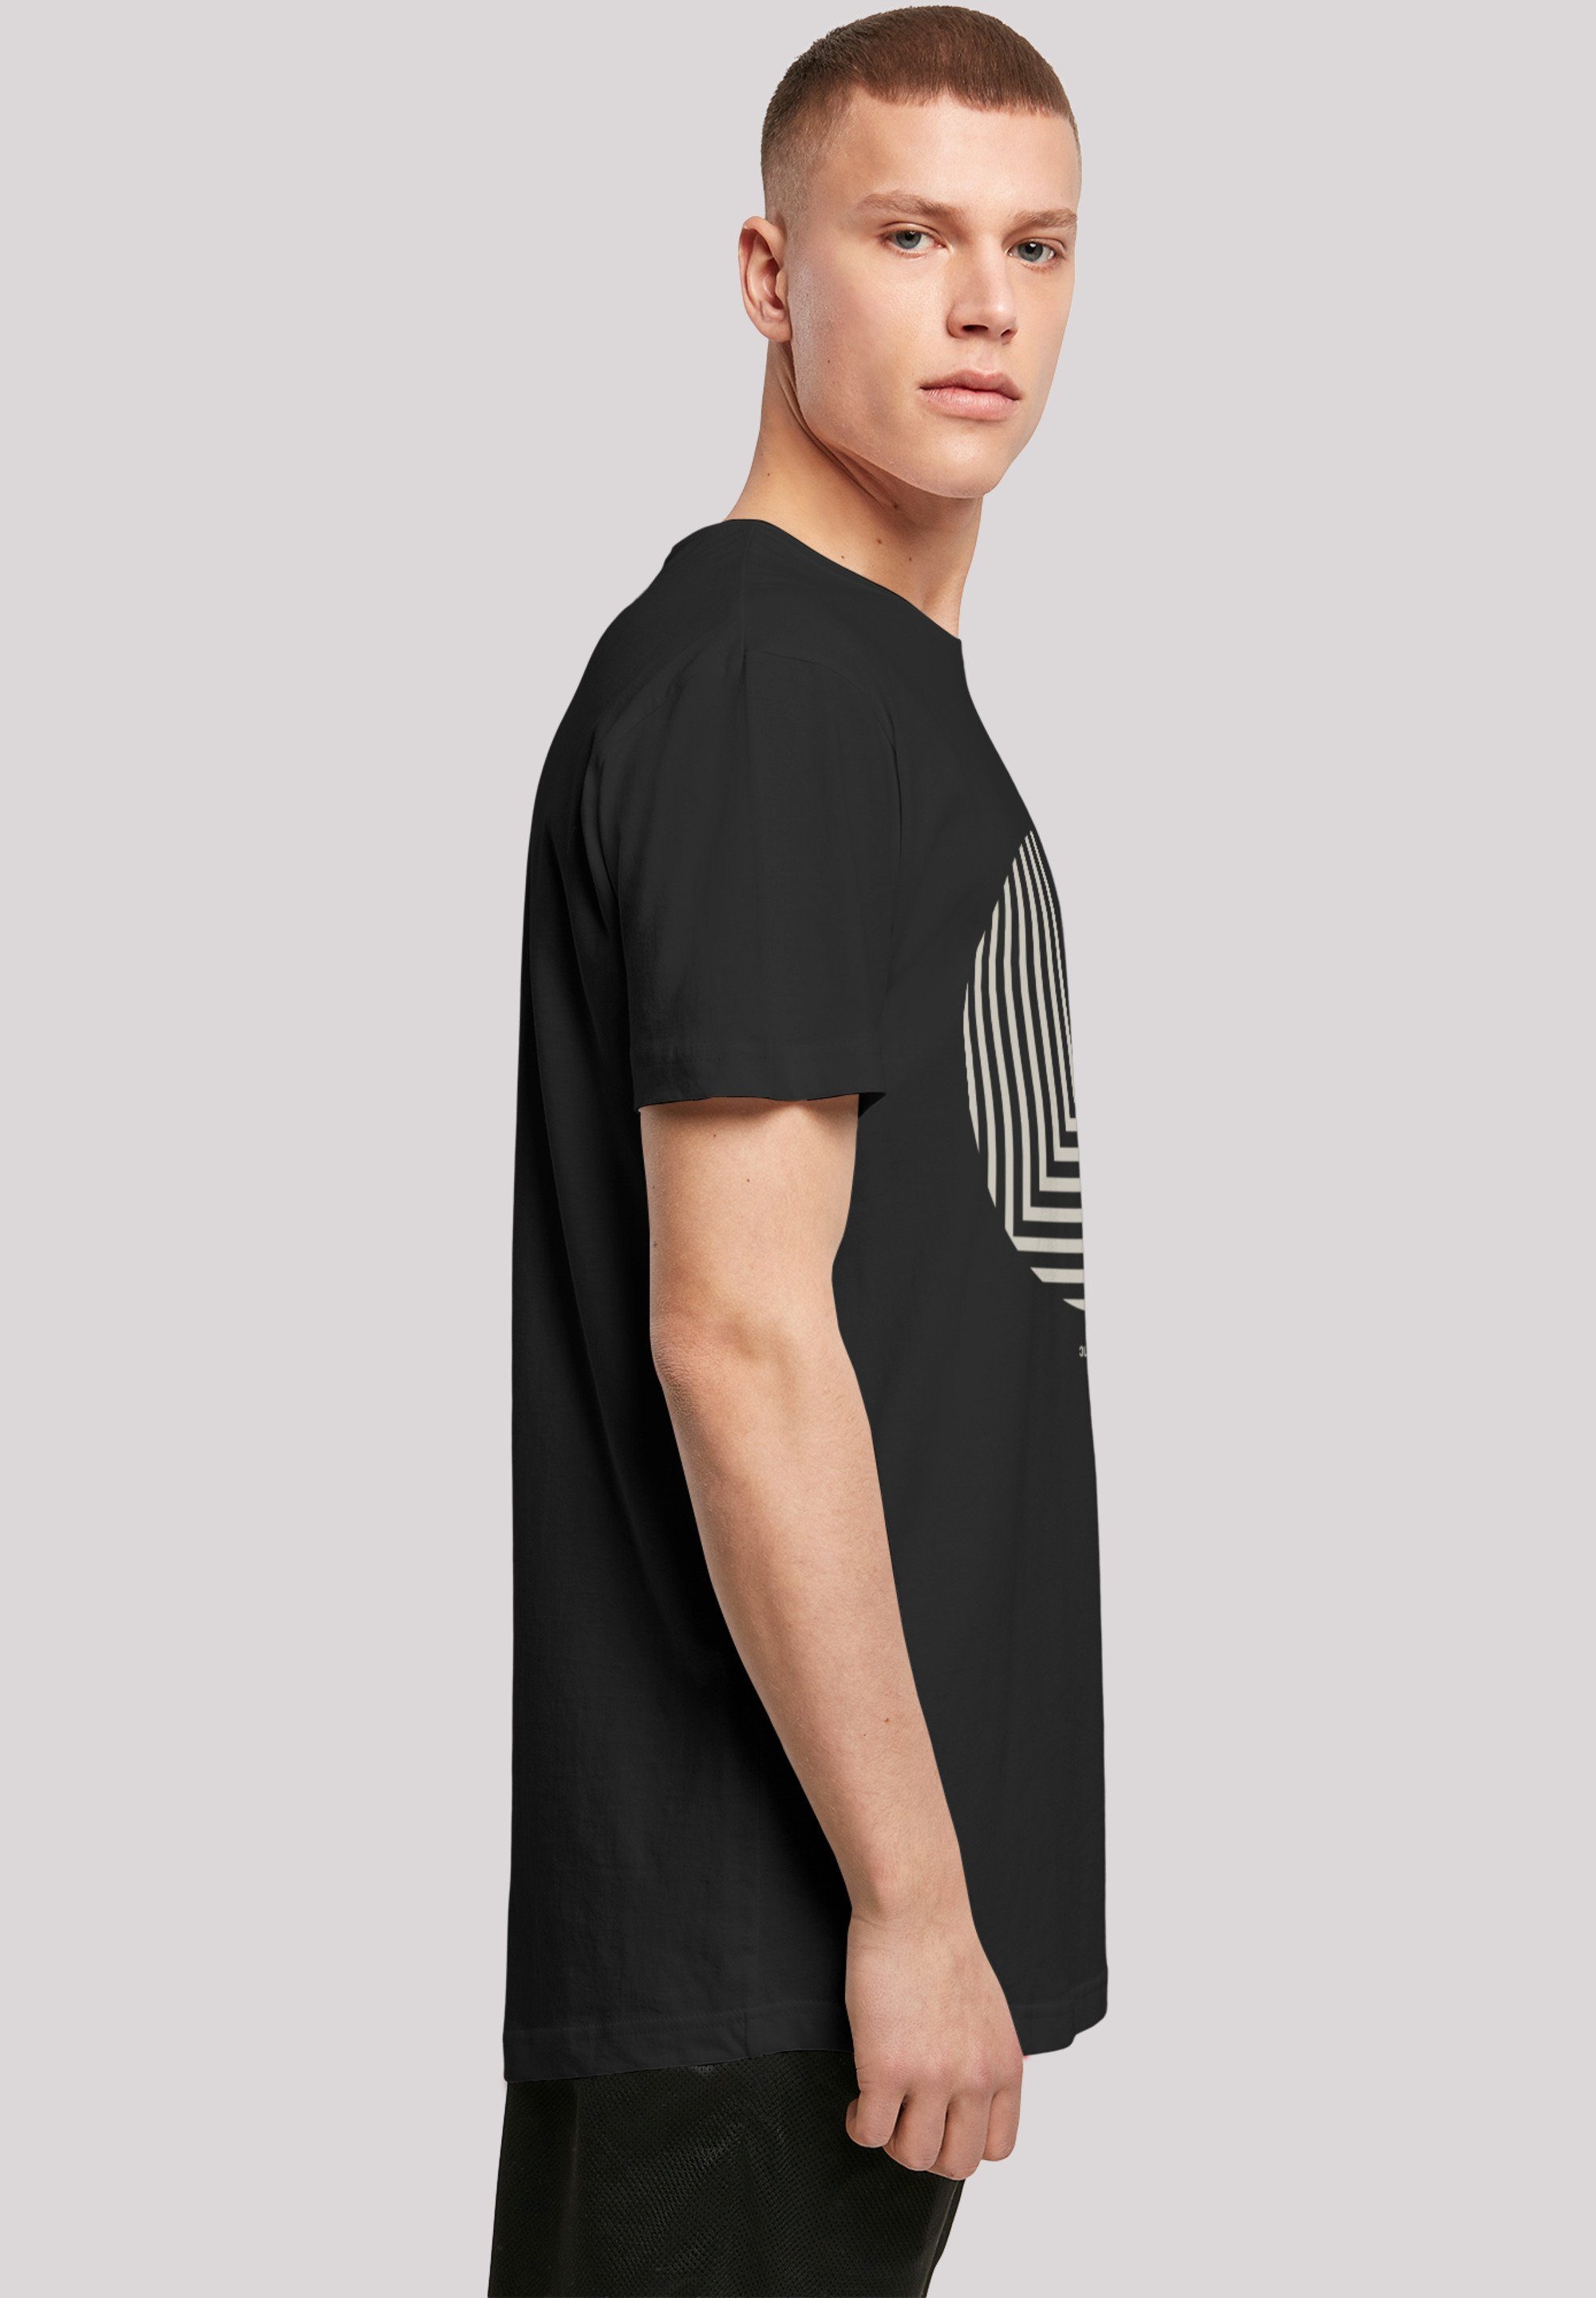 F4NT4STIC T-Shirt Geometrics Grün Print schwarz